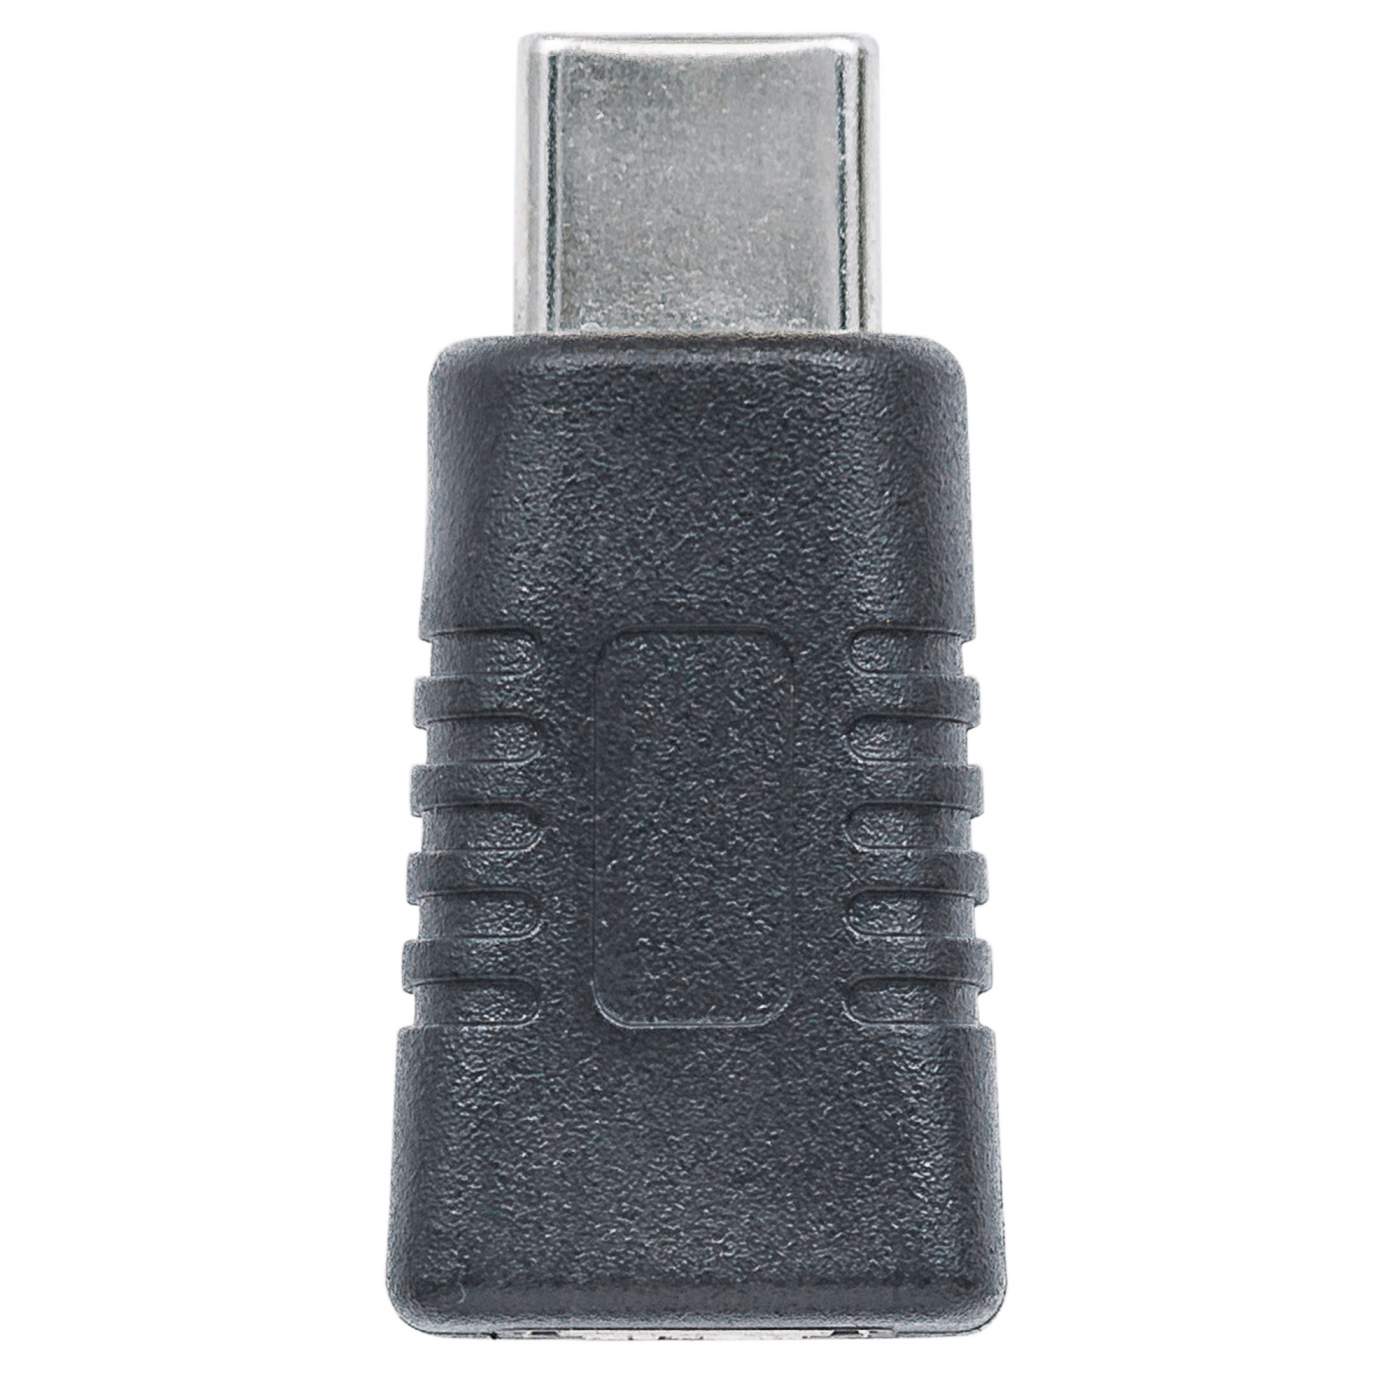 Manhattan Adaptador USB 2.0 de Micro-B a Tipo-C (354660)